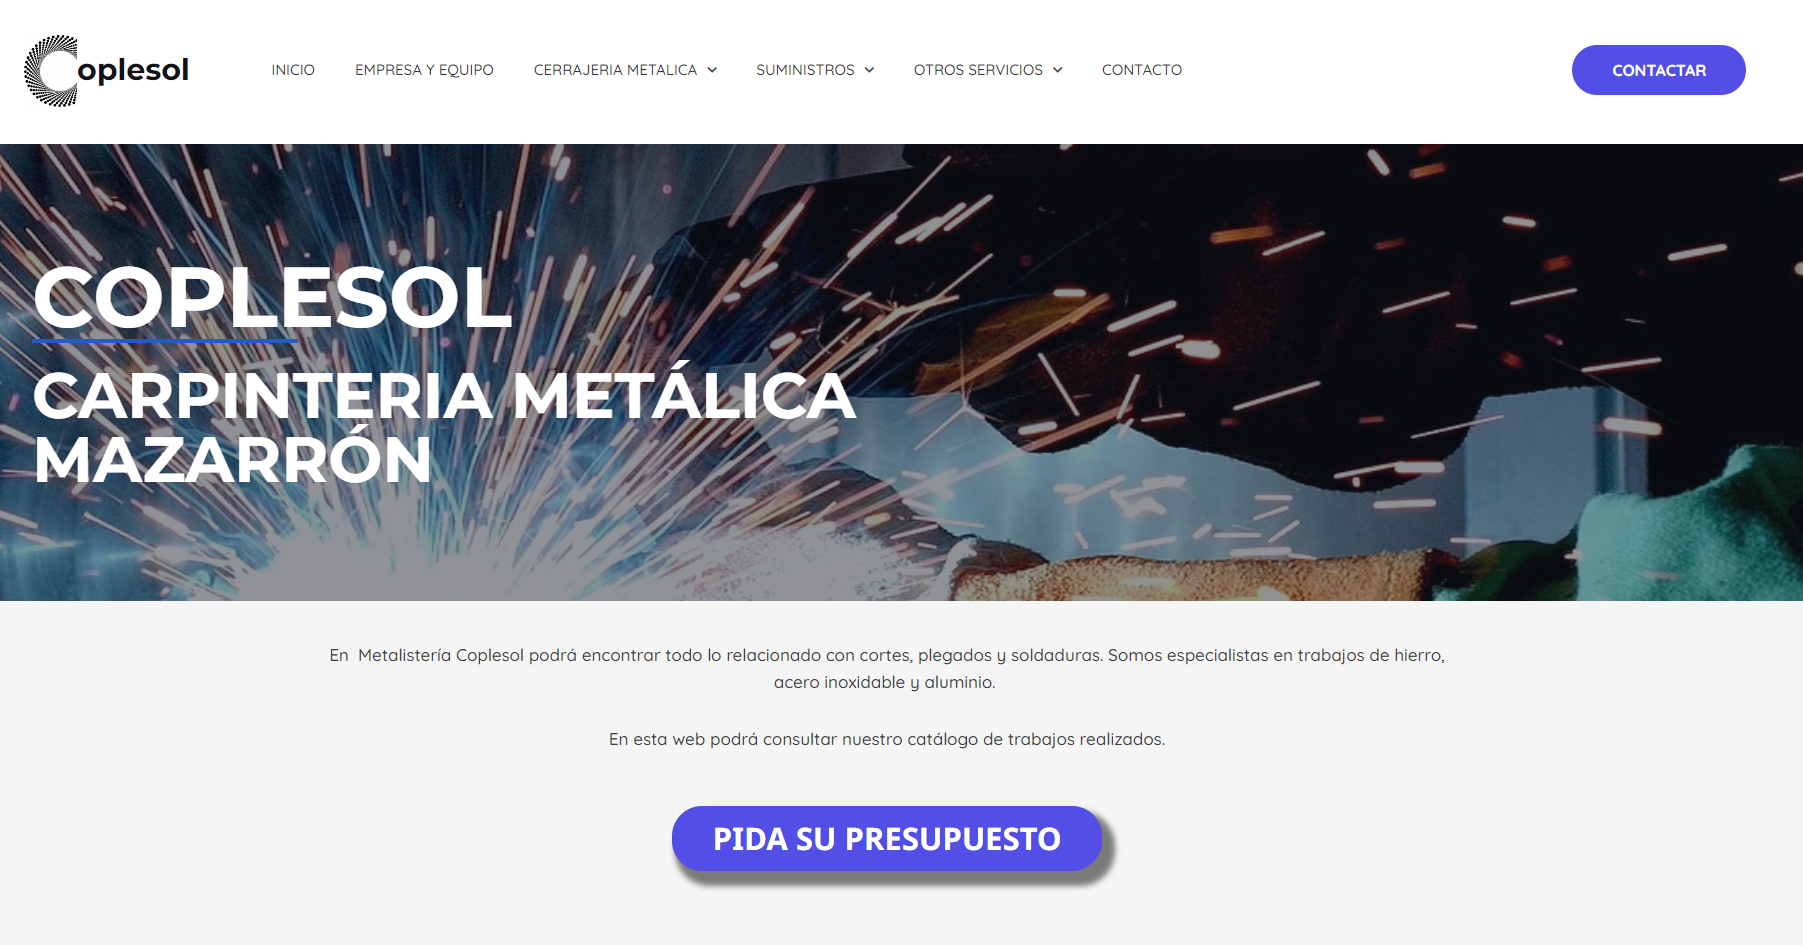 Metalistería Coplesol SLL: Innovación y Excelencia en el Sector del Hierro, Acero Inoxidable y Aluminio